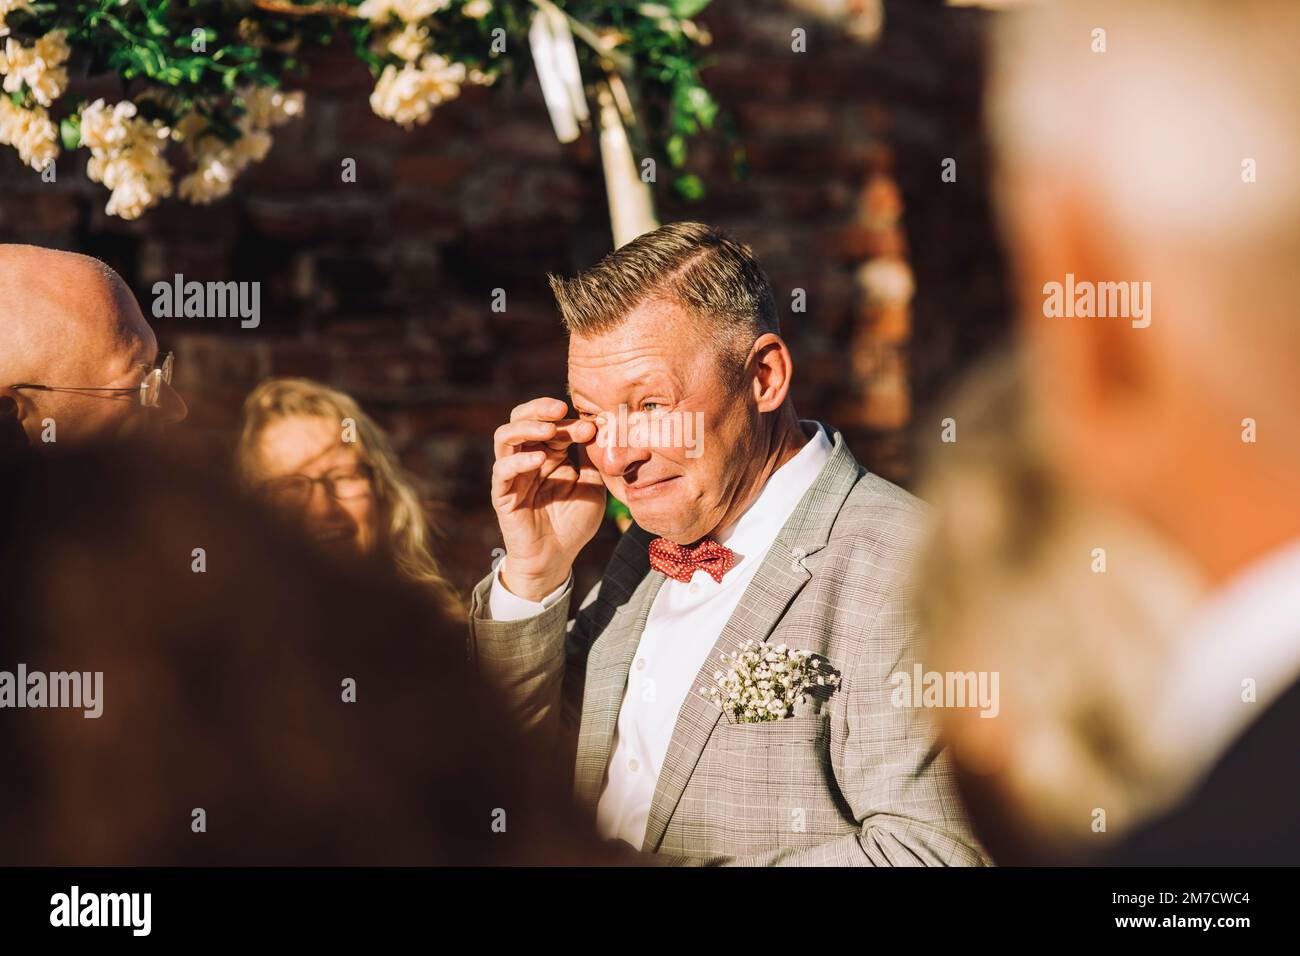 Un groom souriant essuyant ses larmes avec le doigt parmi les clients le jour ensoleillé Banque D'Images